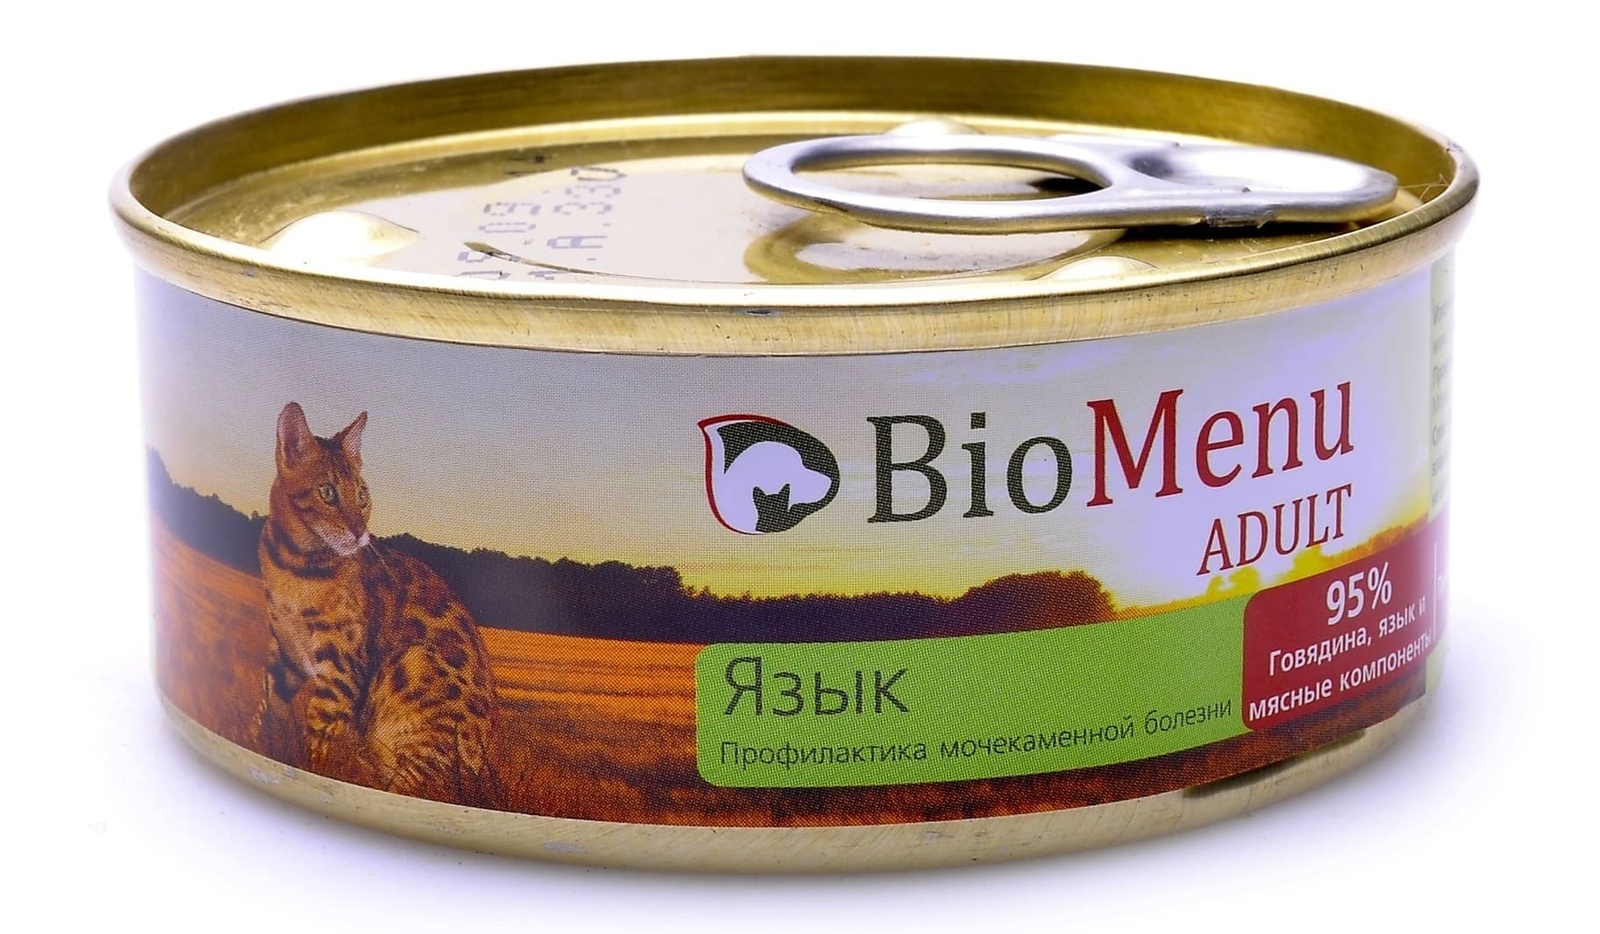 BioMenu BioMenu паштет для кошек, с языком (100 г) консервы biomenu adult для кошек мясной паштет с кроликом 95% мясо 100 г